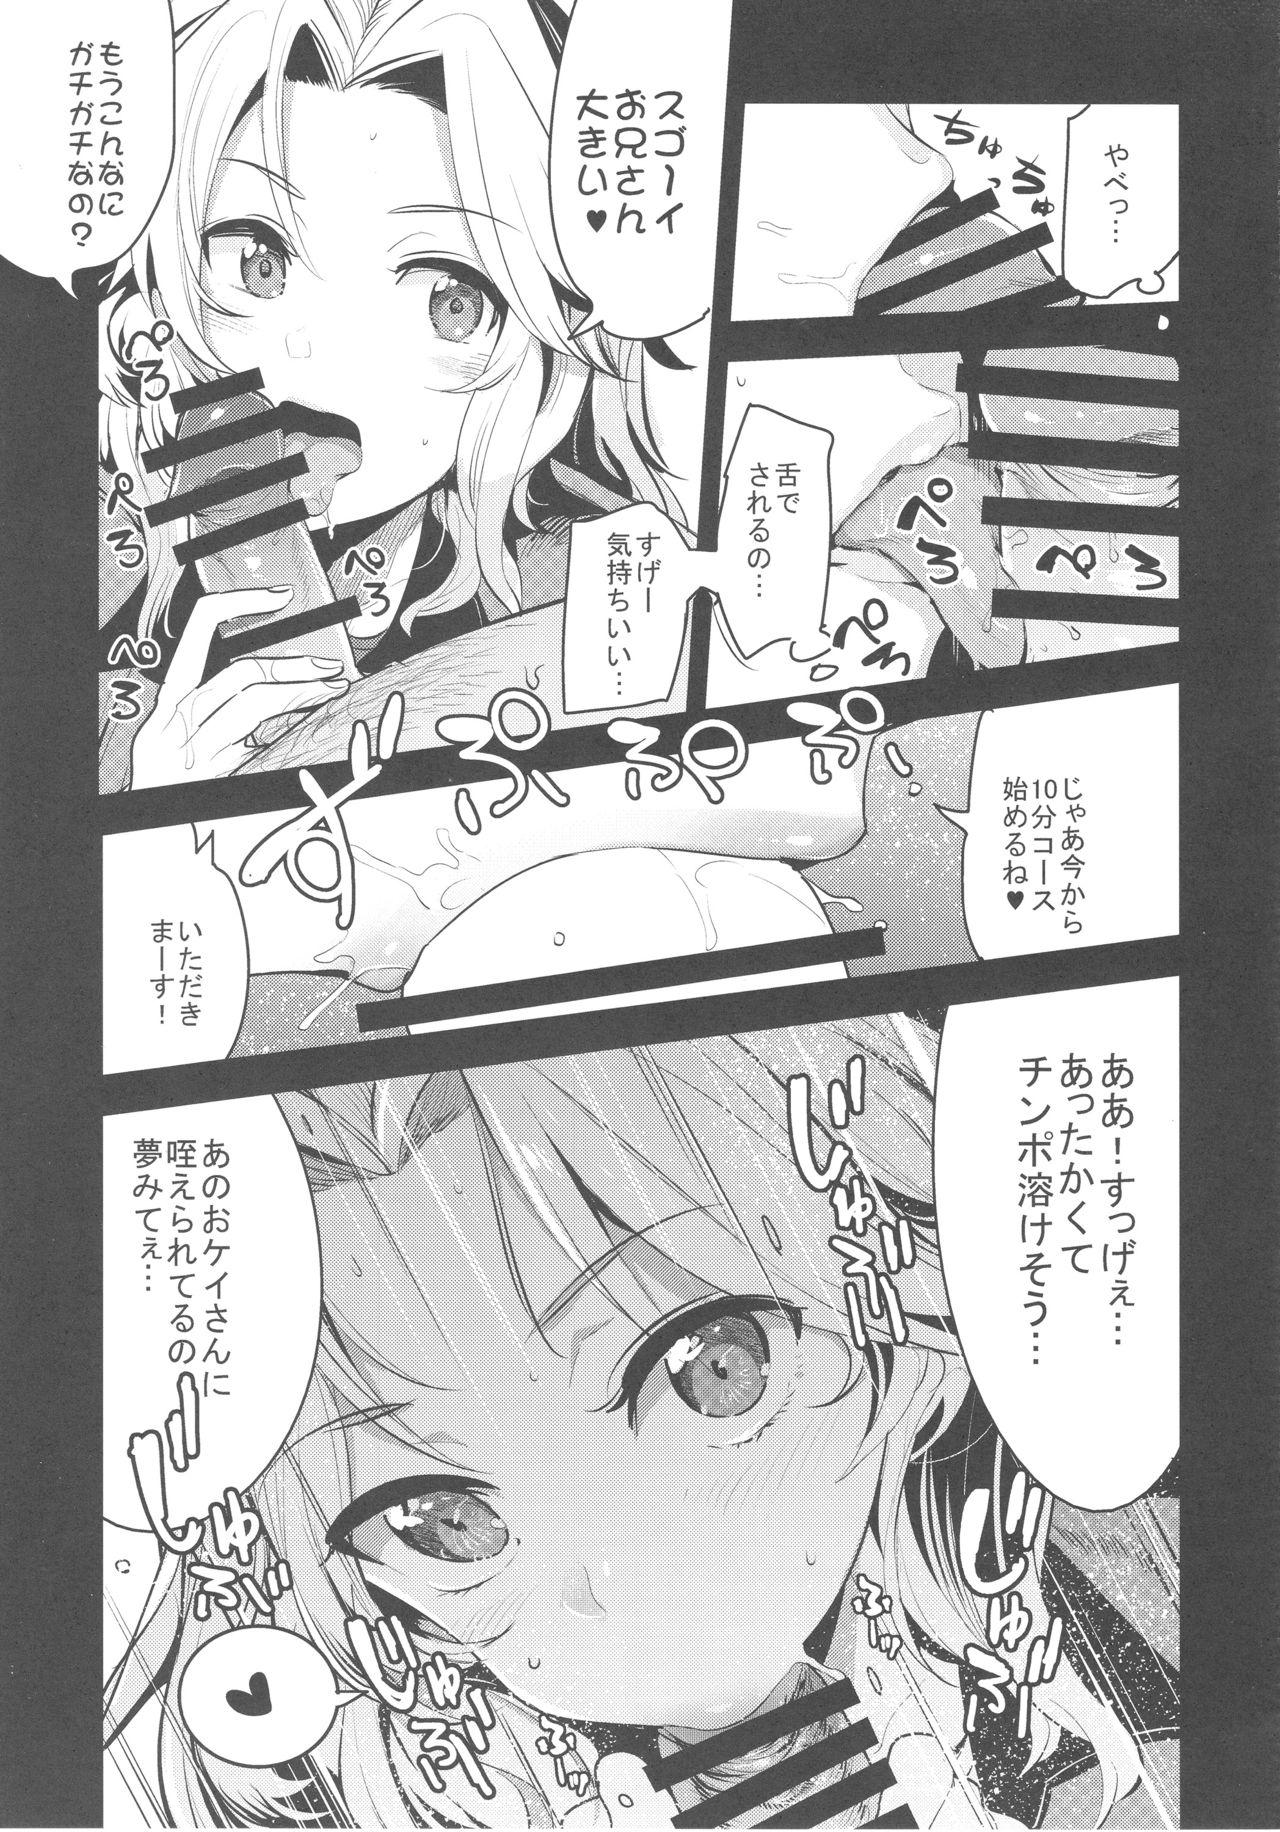 Loira GirlPan Rakugakichou 7 - Girls und panzer Anime - Page 4